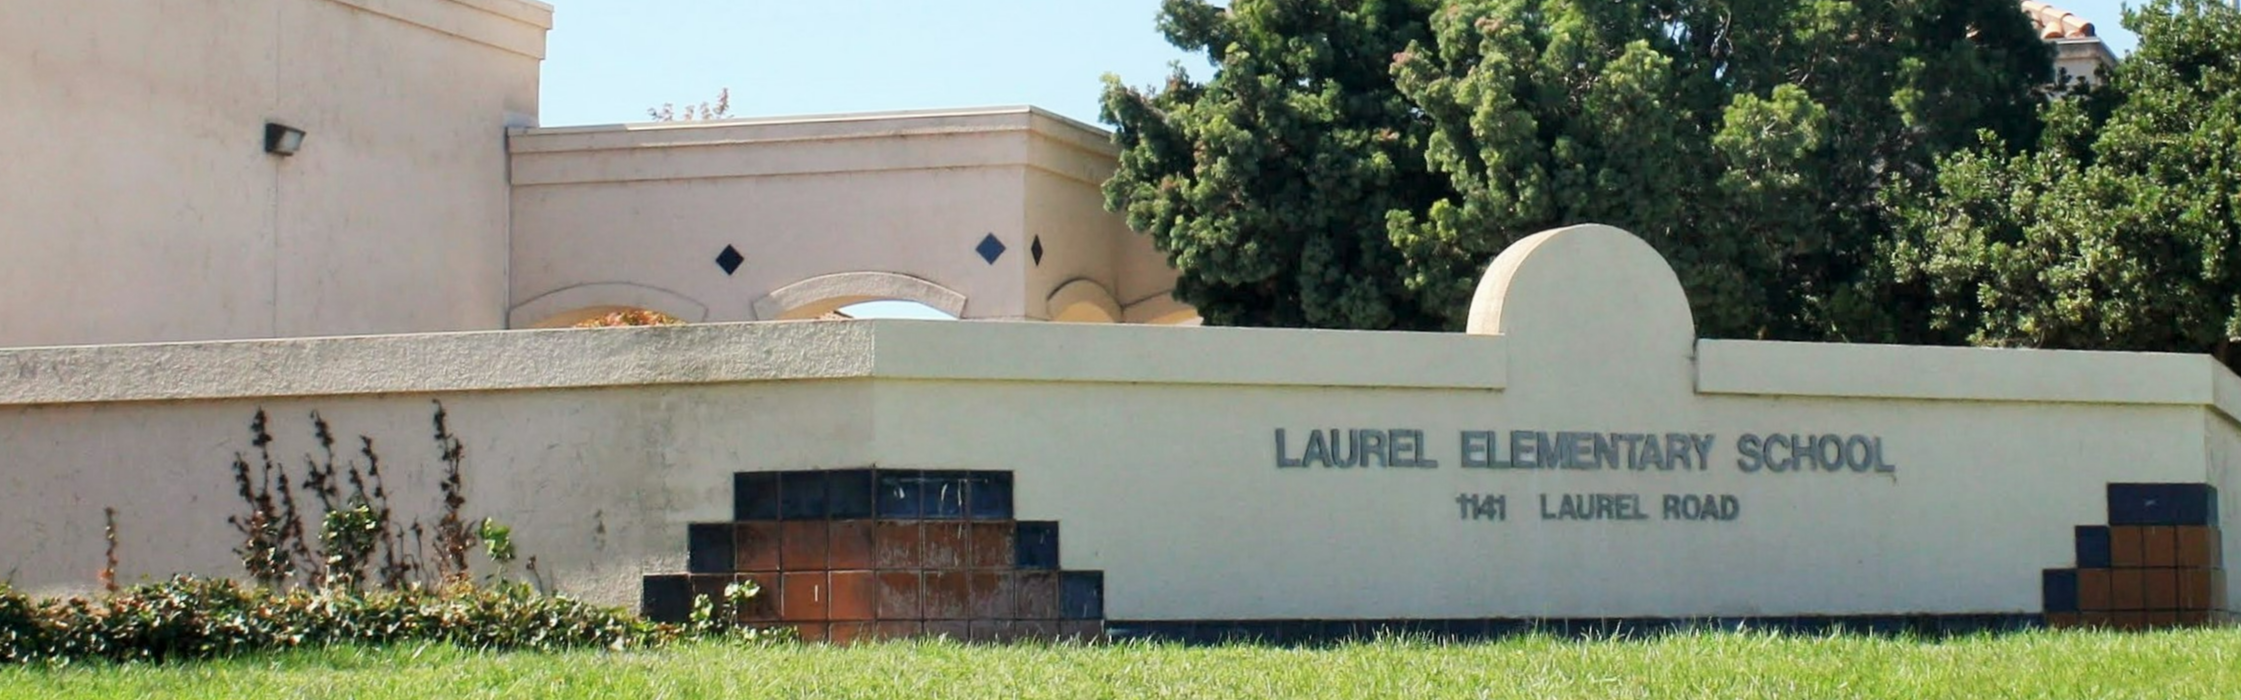 Laurel Elementary School Sign